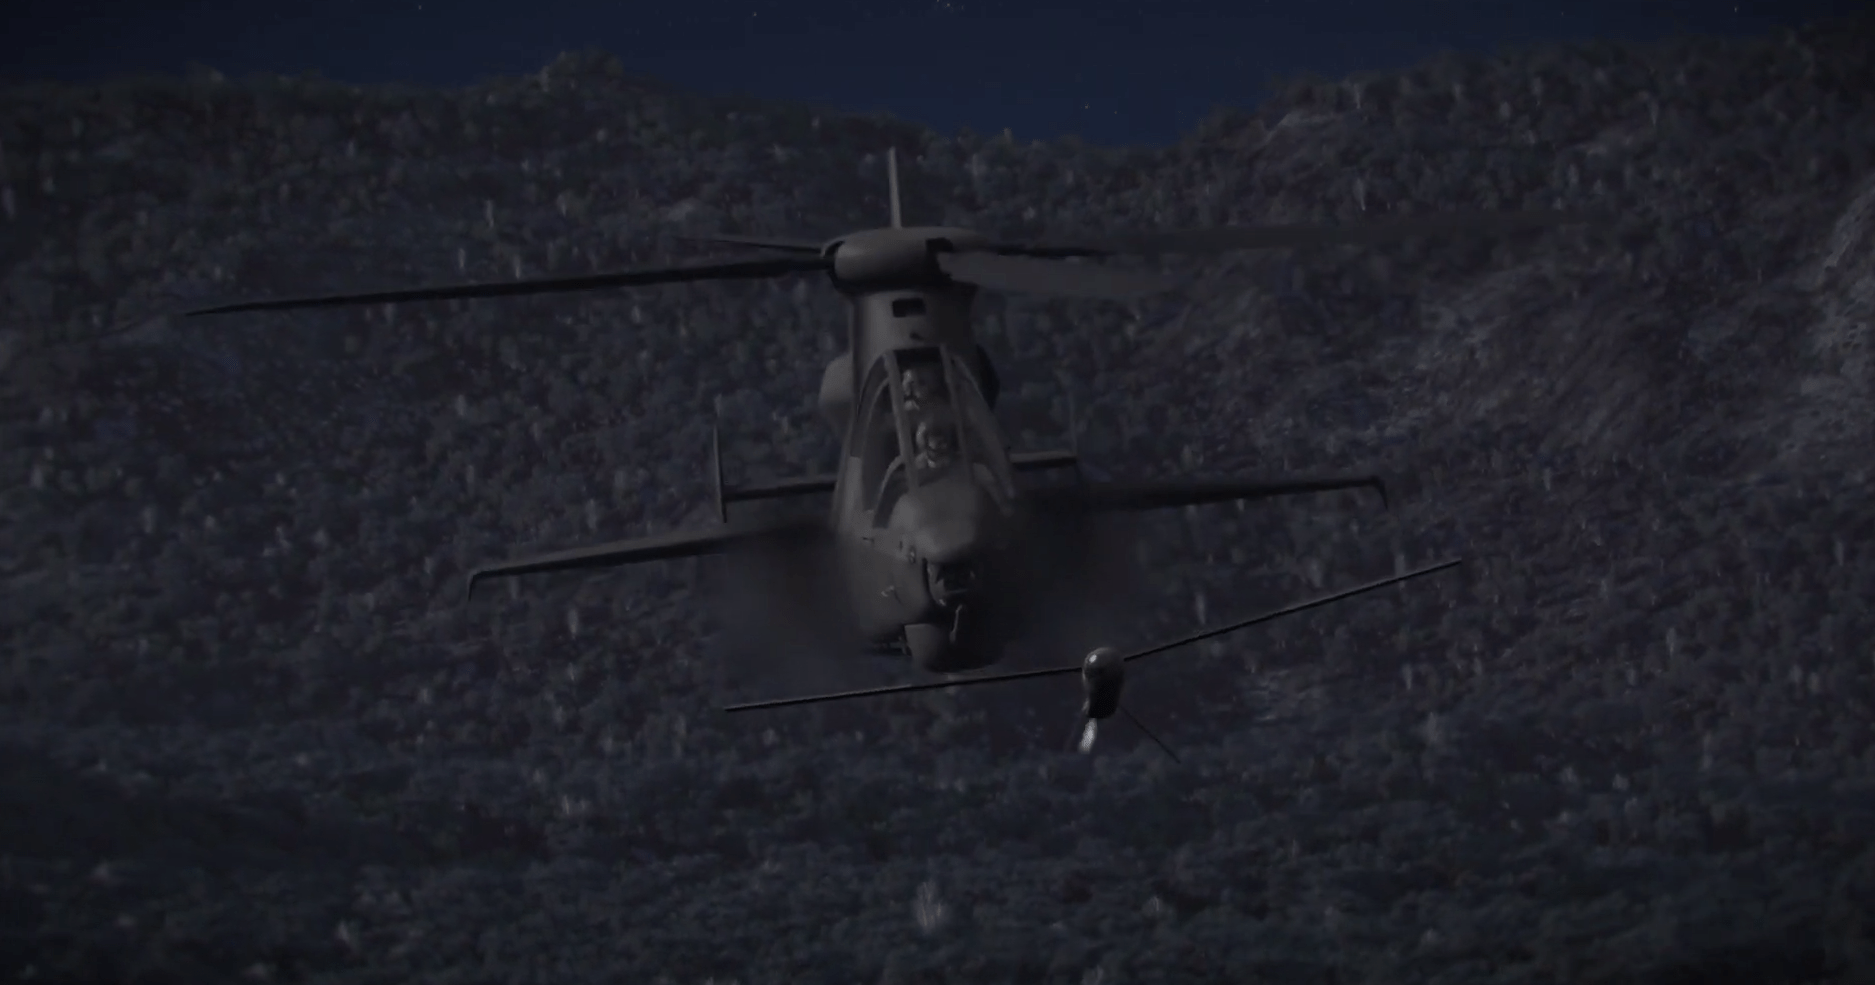 贝尔·德士隆公司为此炫耀:使用先进的武器装备,贝尔360超级直升机